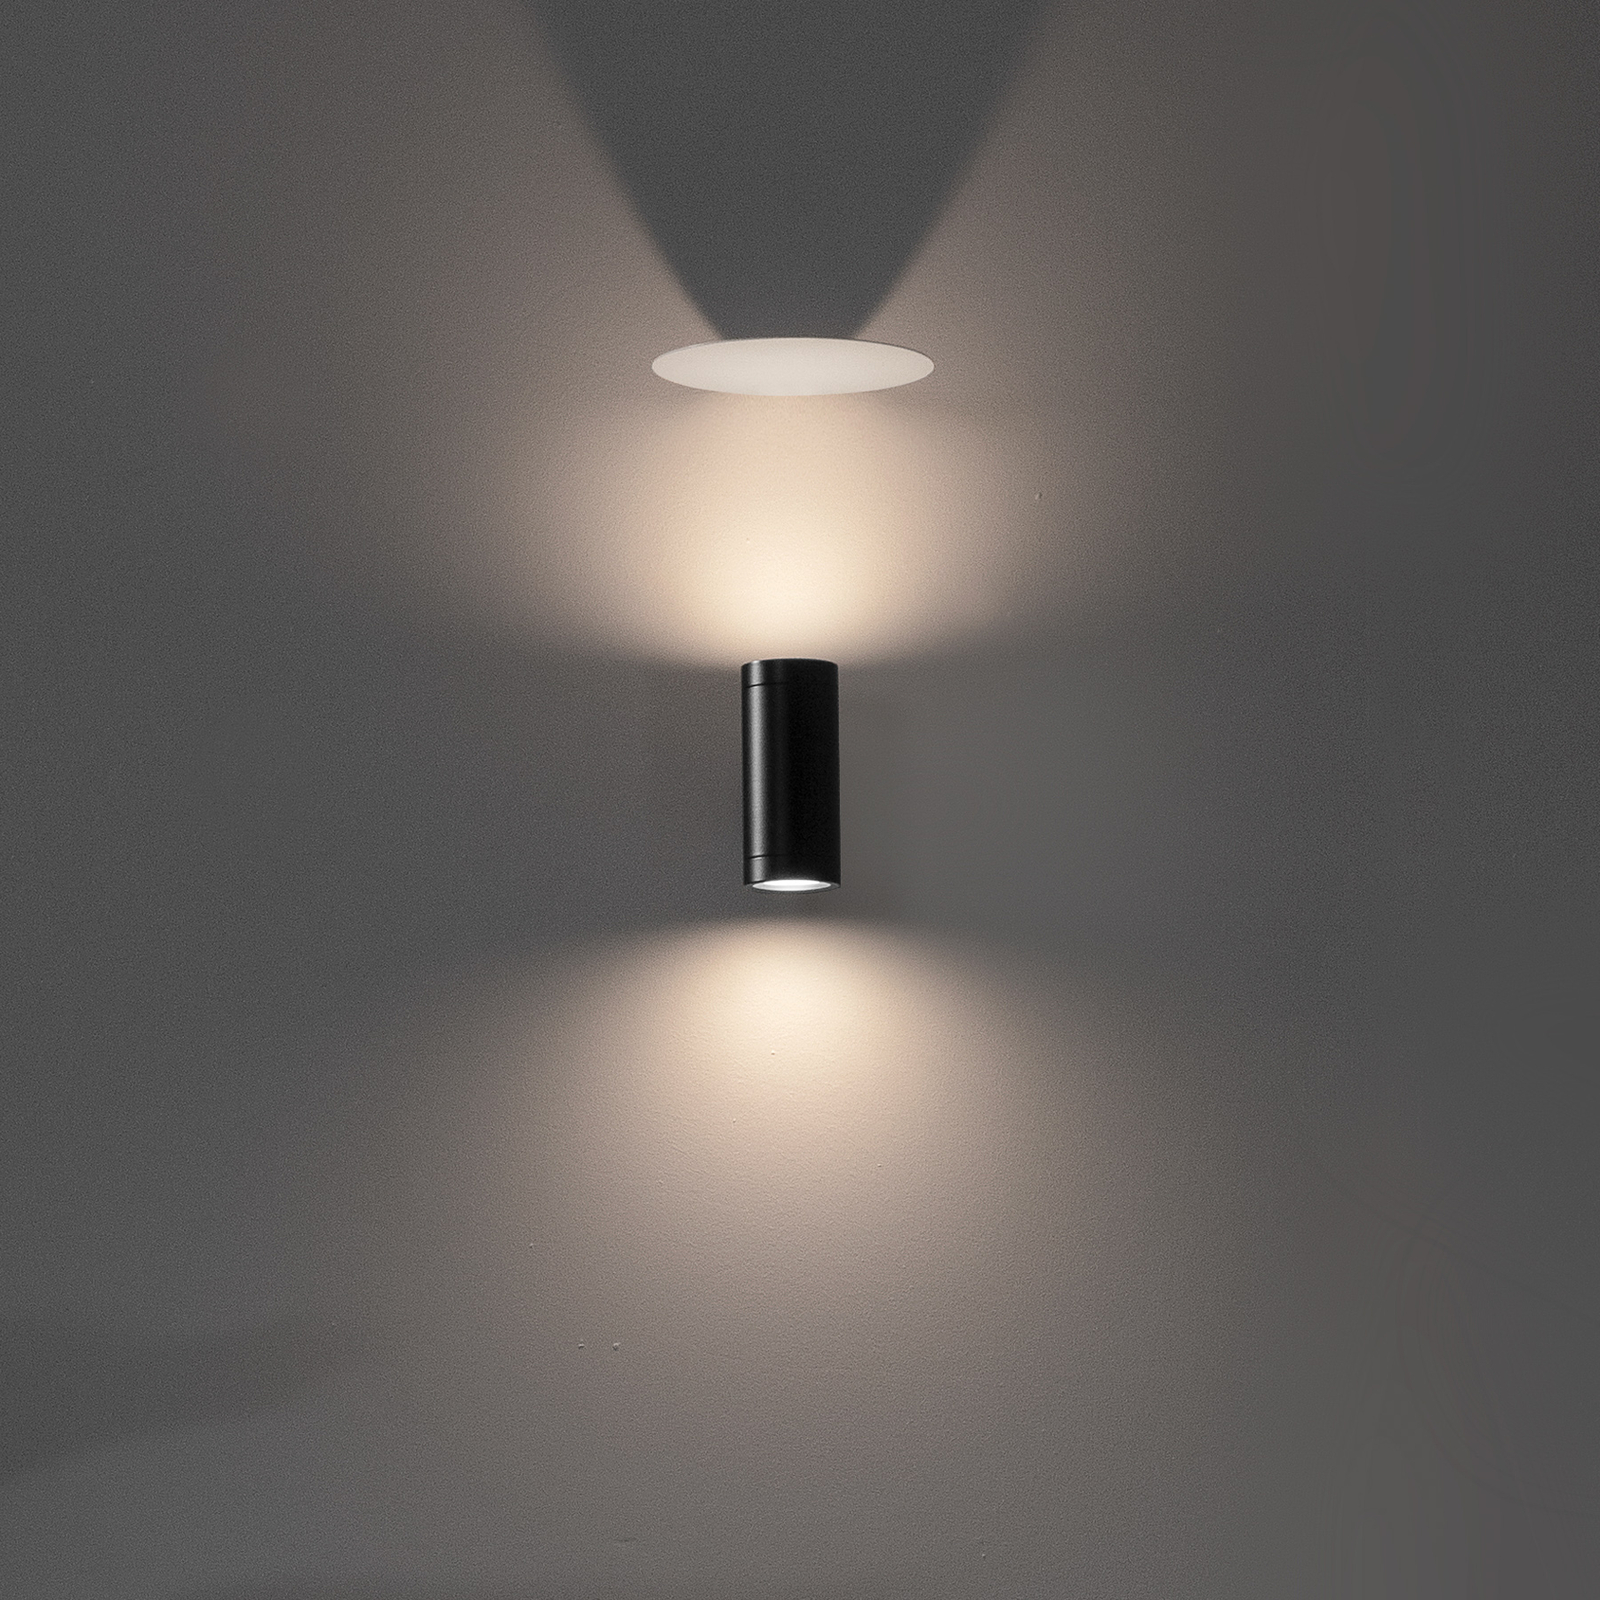 Karman Movida LED wall light 2,700 K black